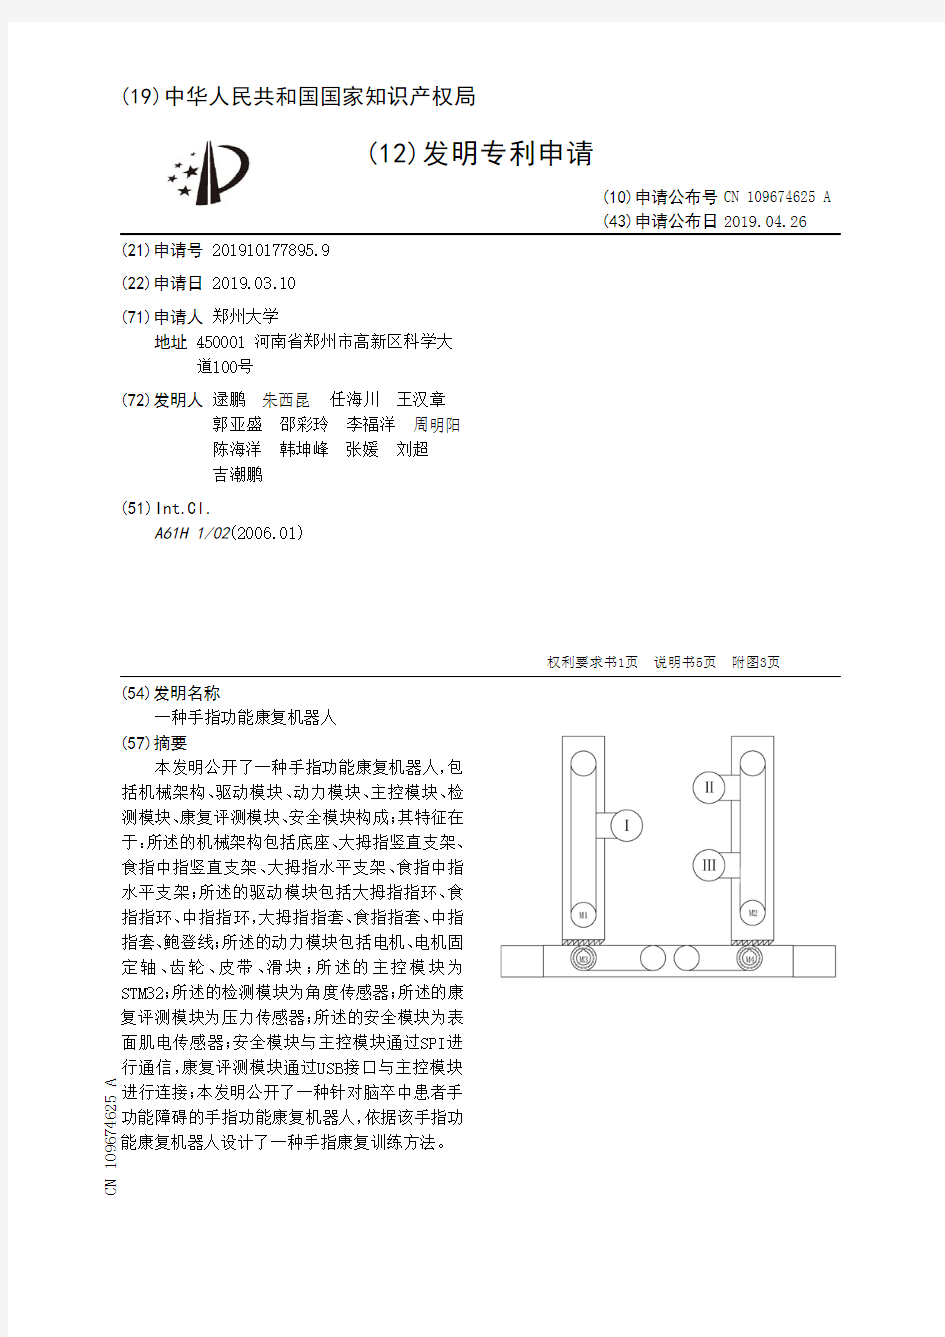 【CN109674625A】一种手指功能康复机器人【专利】